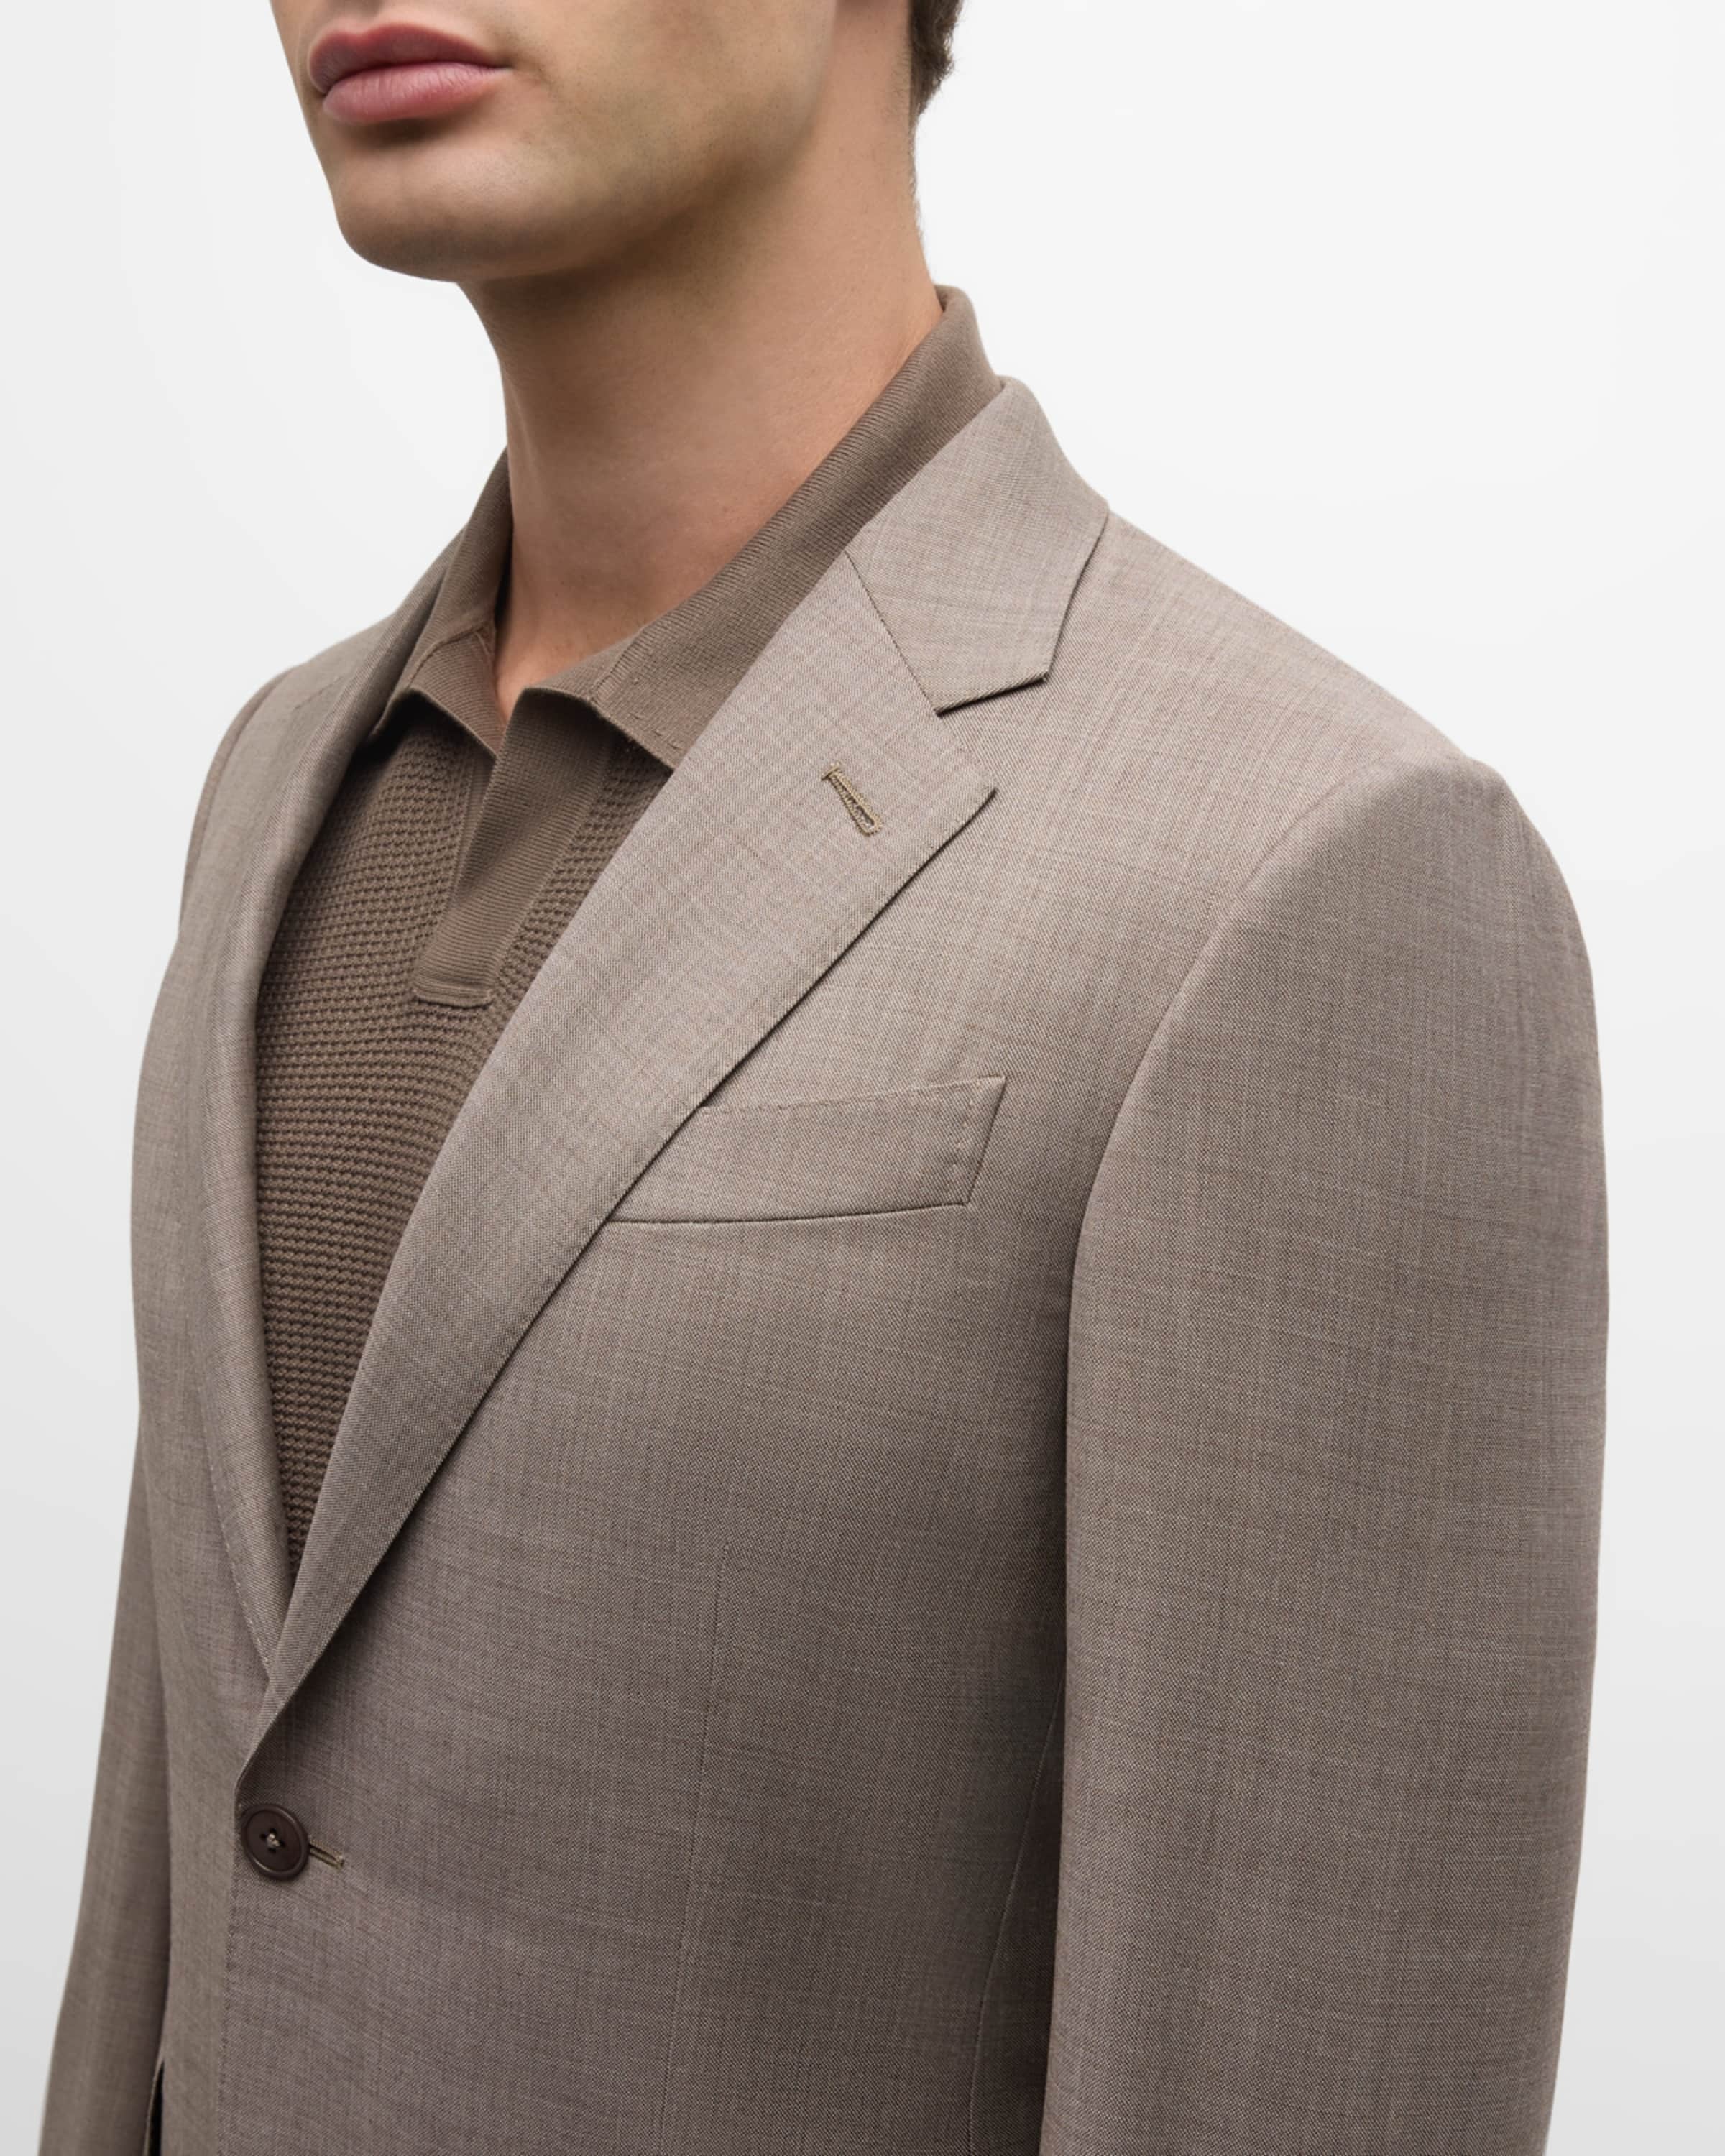 Men's Wool Sharkskin Suit - 2